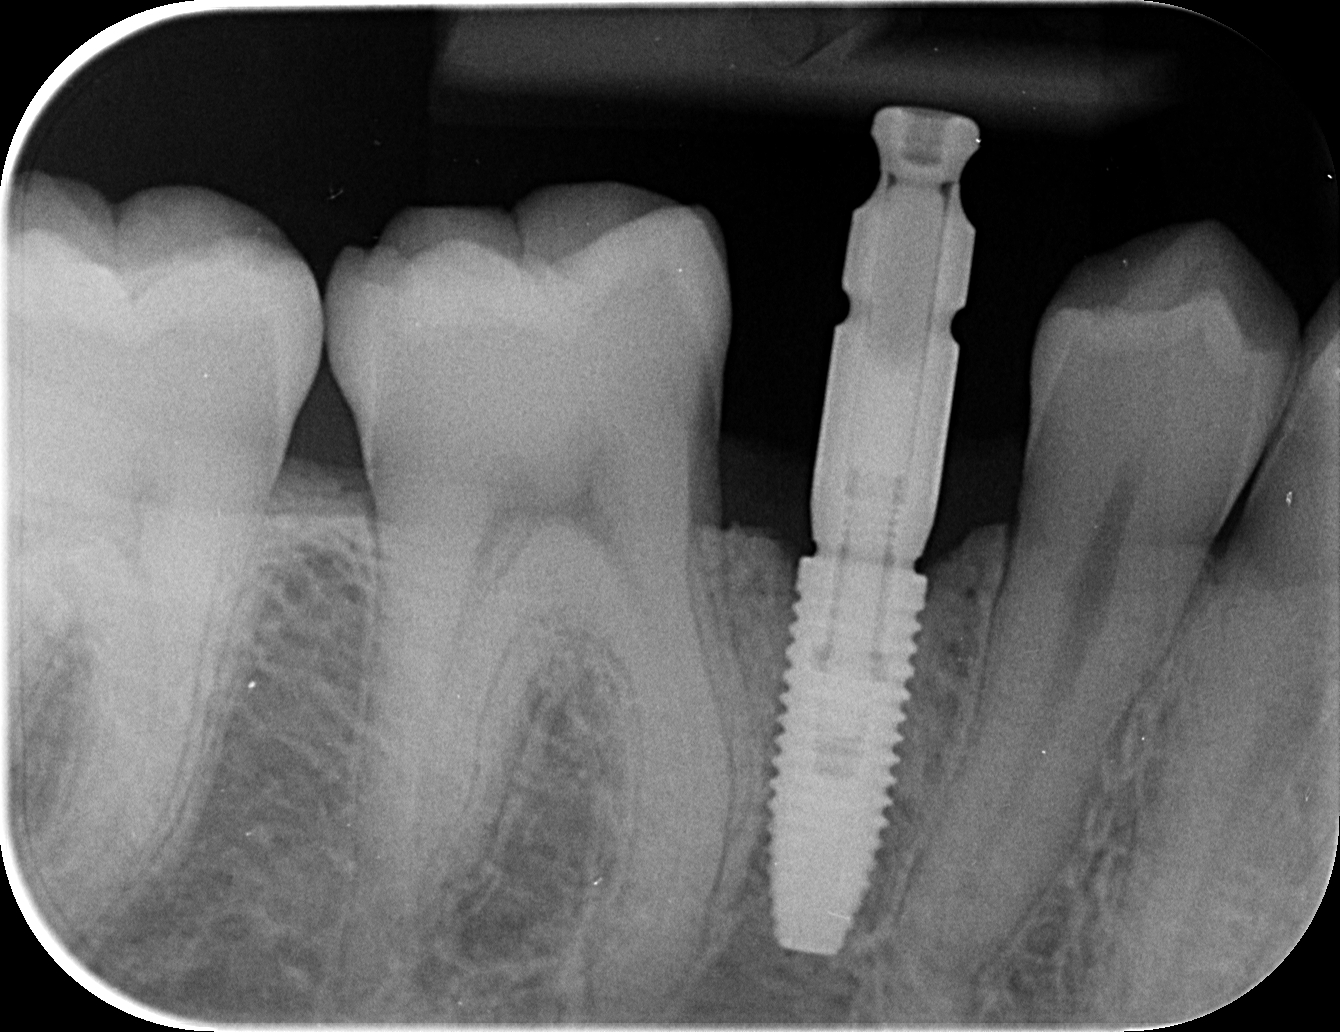 Implant dentaire Nobel Biocare avec son pilier d'empreinte sur une radio locale